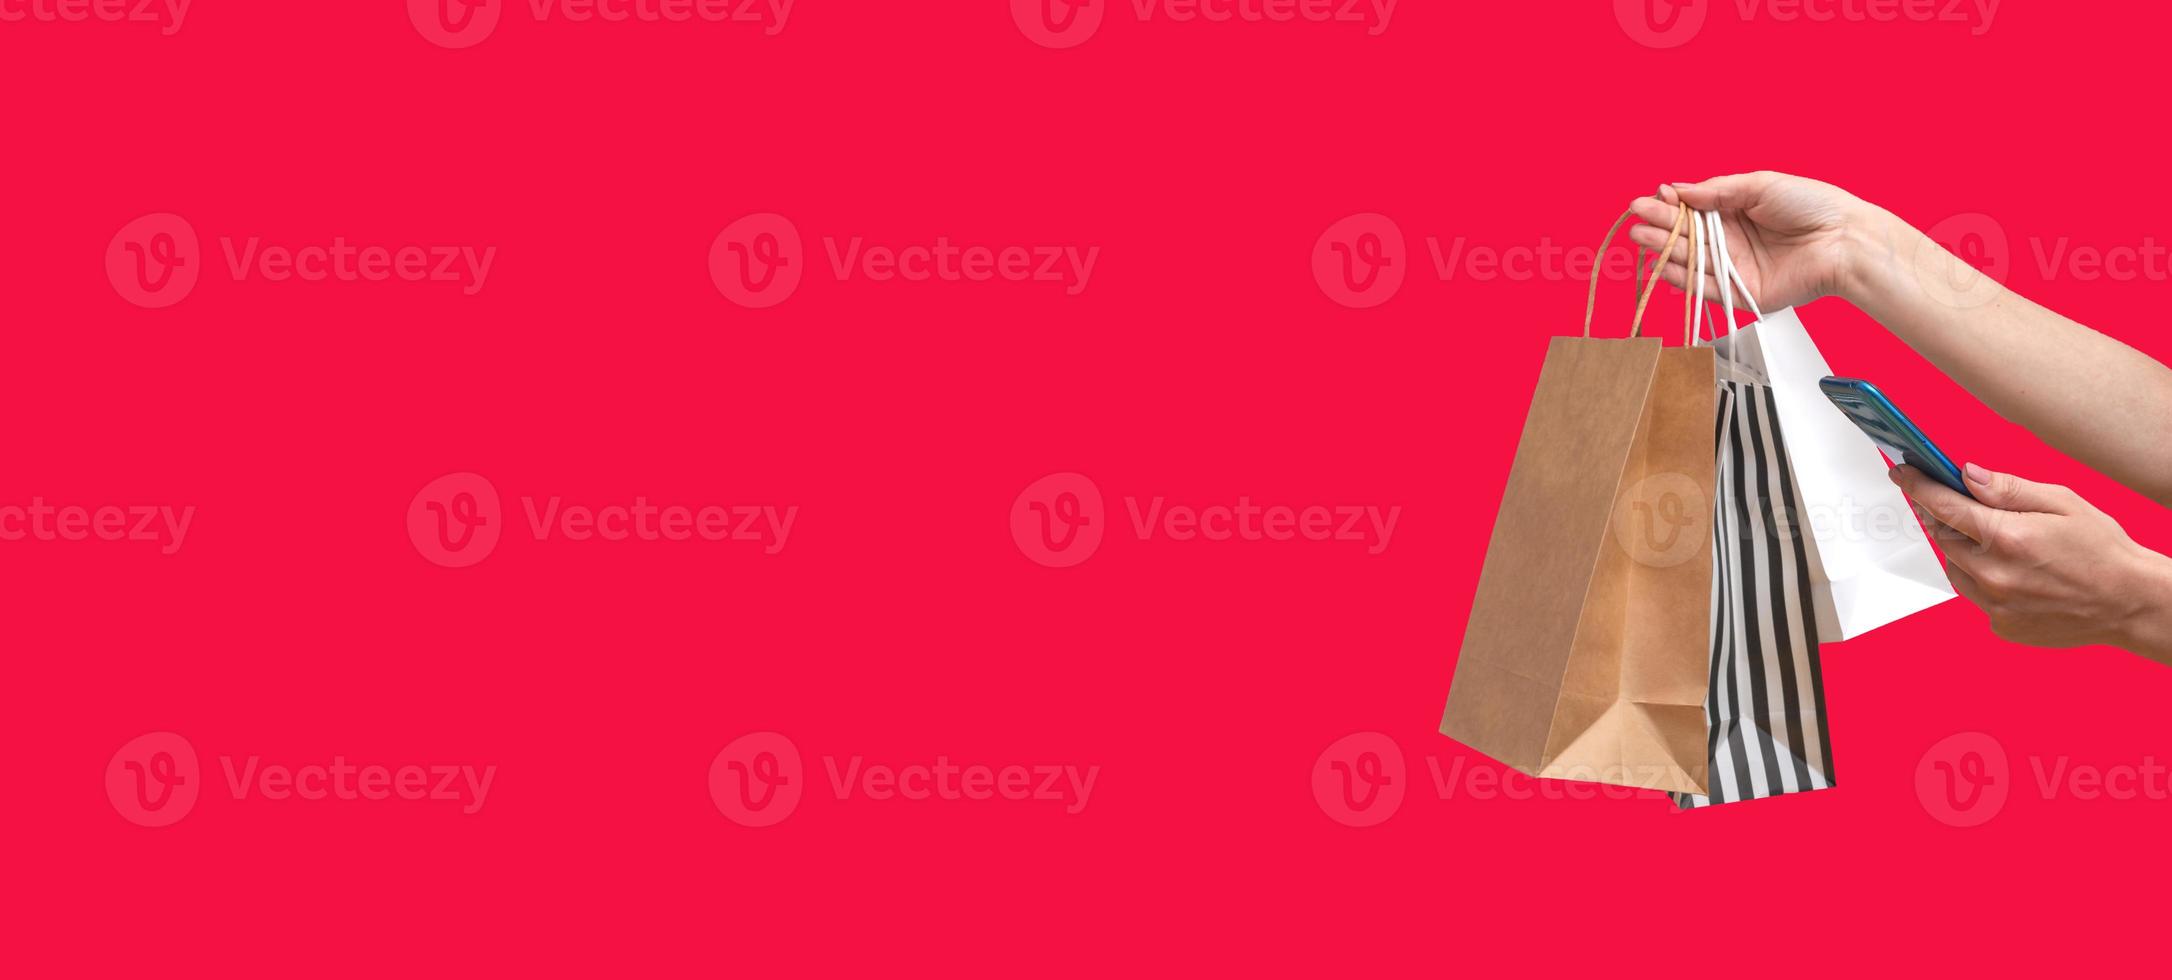 Frau online von einem Mobiltelefon aus einkaufen. weibliche Hände mit Paketen auf rotem Hintergrund isoliert, Textfreiraum. Banner foto